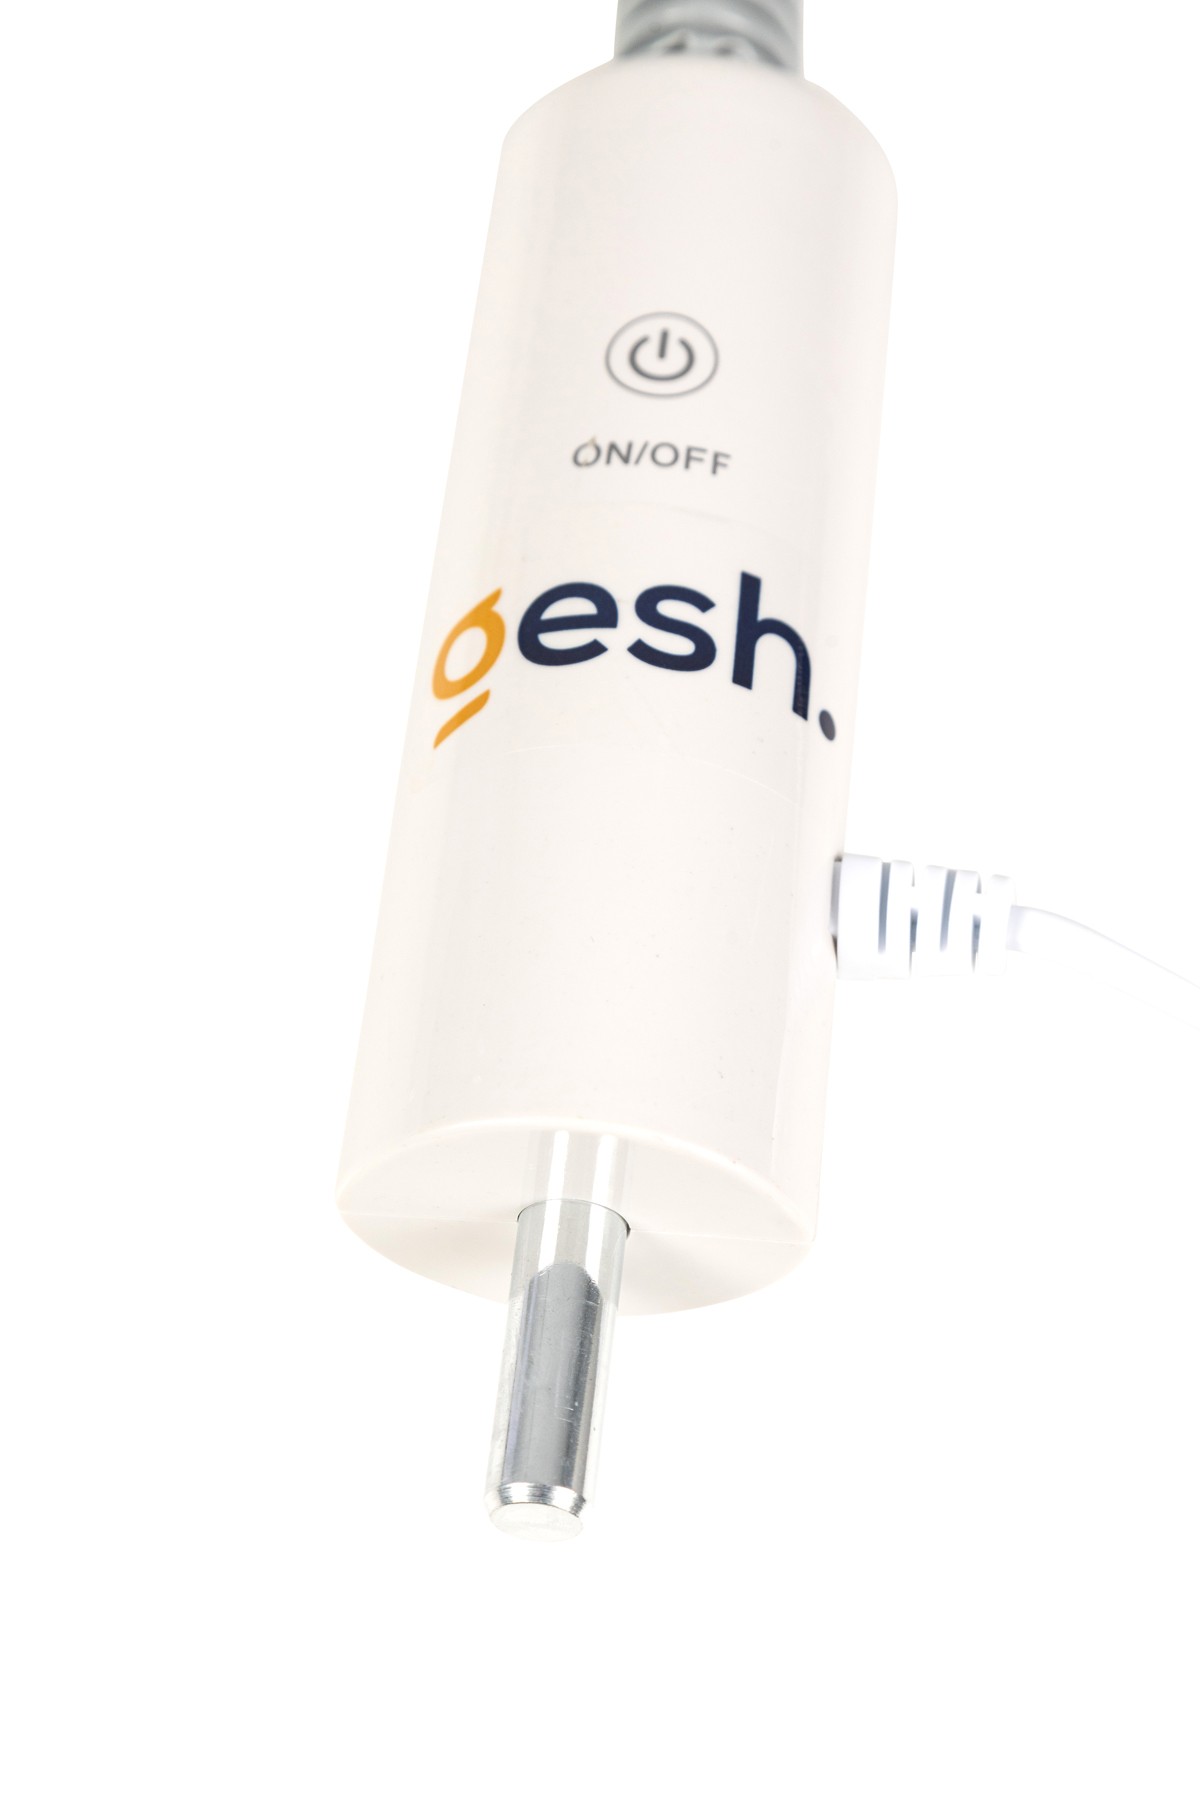 Gesh DT-709 Loop LED Işık 5x Yakınlaştırıcı Büyüteçli Işık Ayarlanabilir Takma Aparatlı - Masaüstü